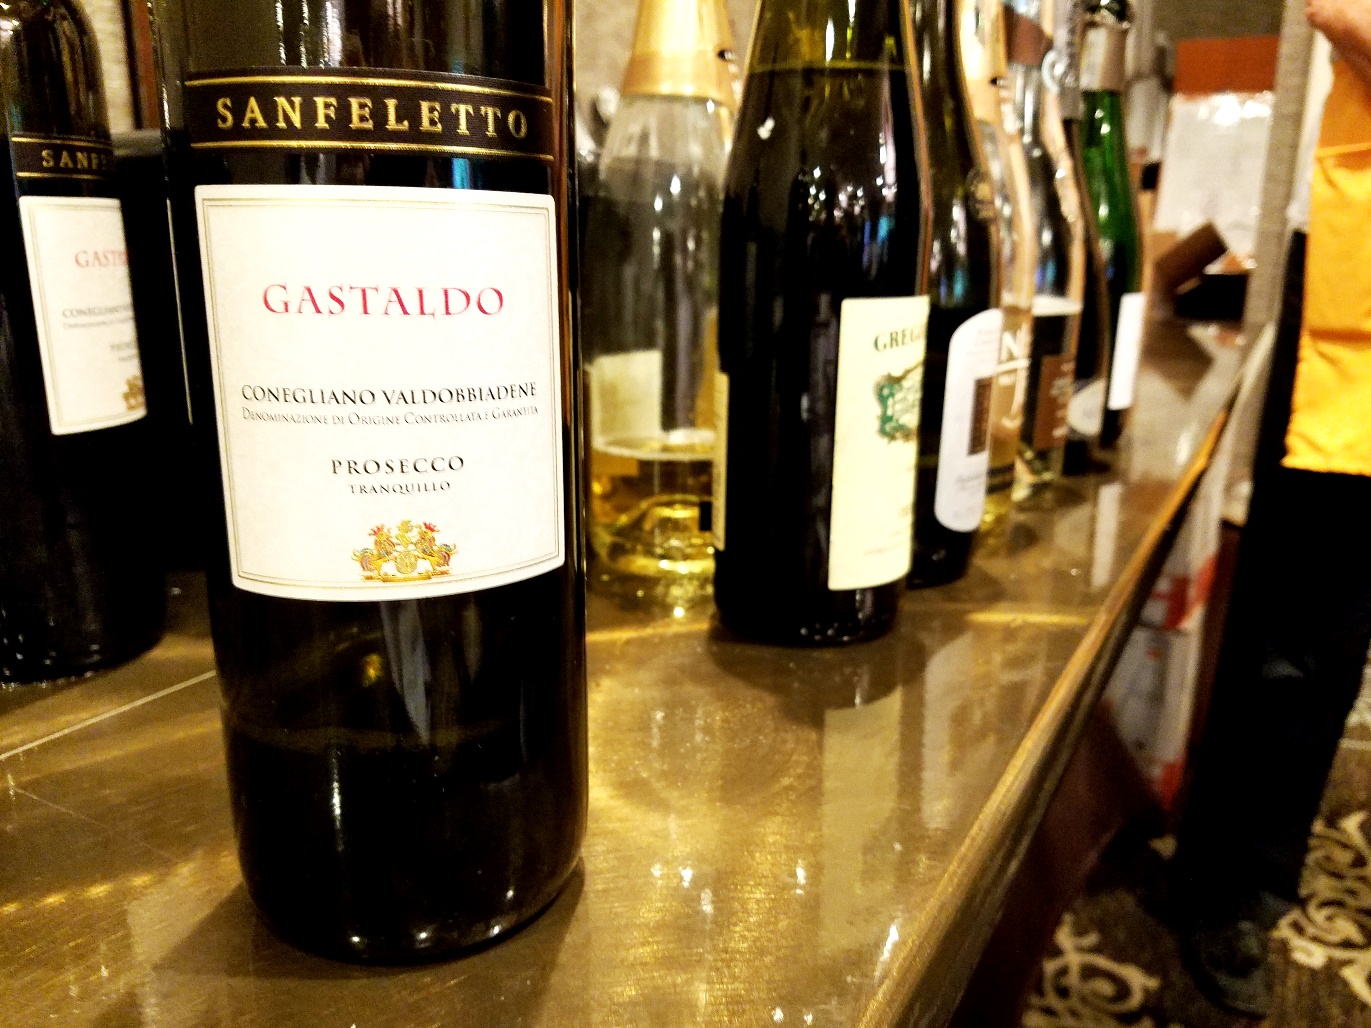 Sanfeletto, Conegliano Valdobbiadene Prosecco Tranquillo DOCG Gastaldo 2017, Veneto, Italy, Wine Casual